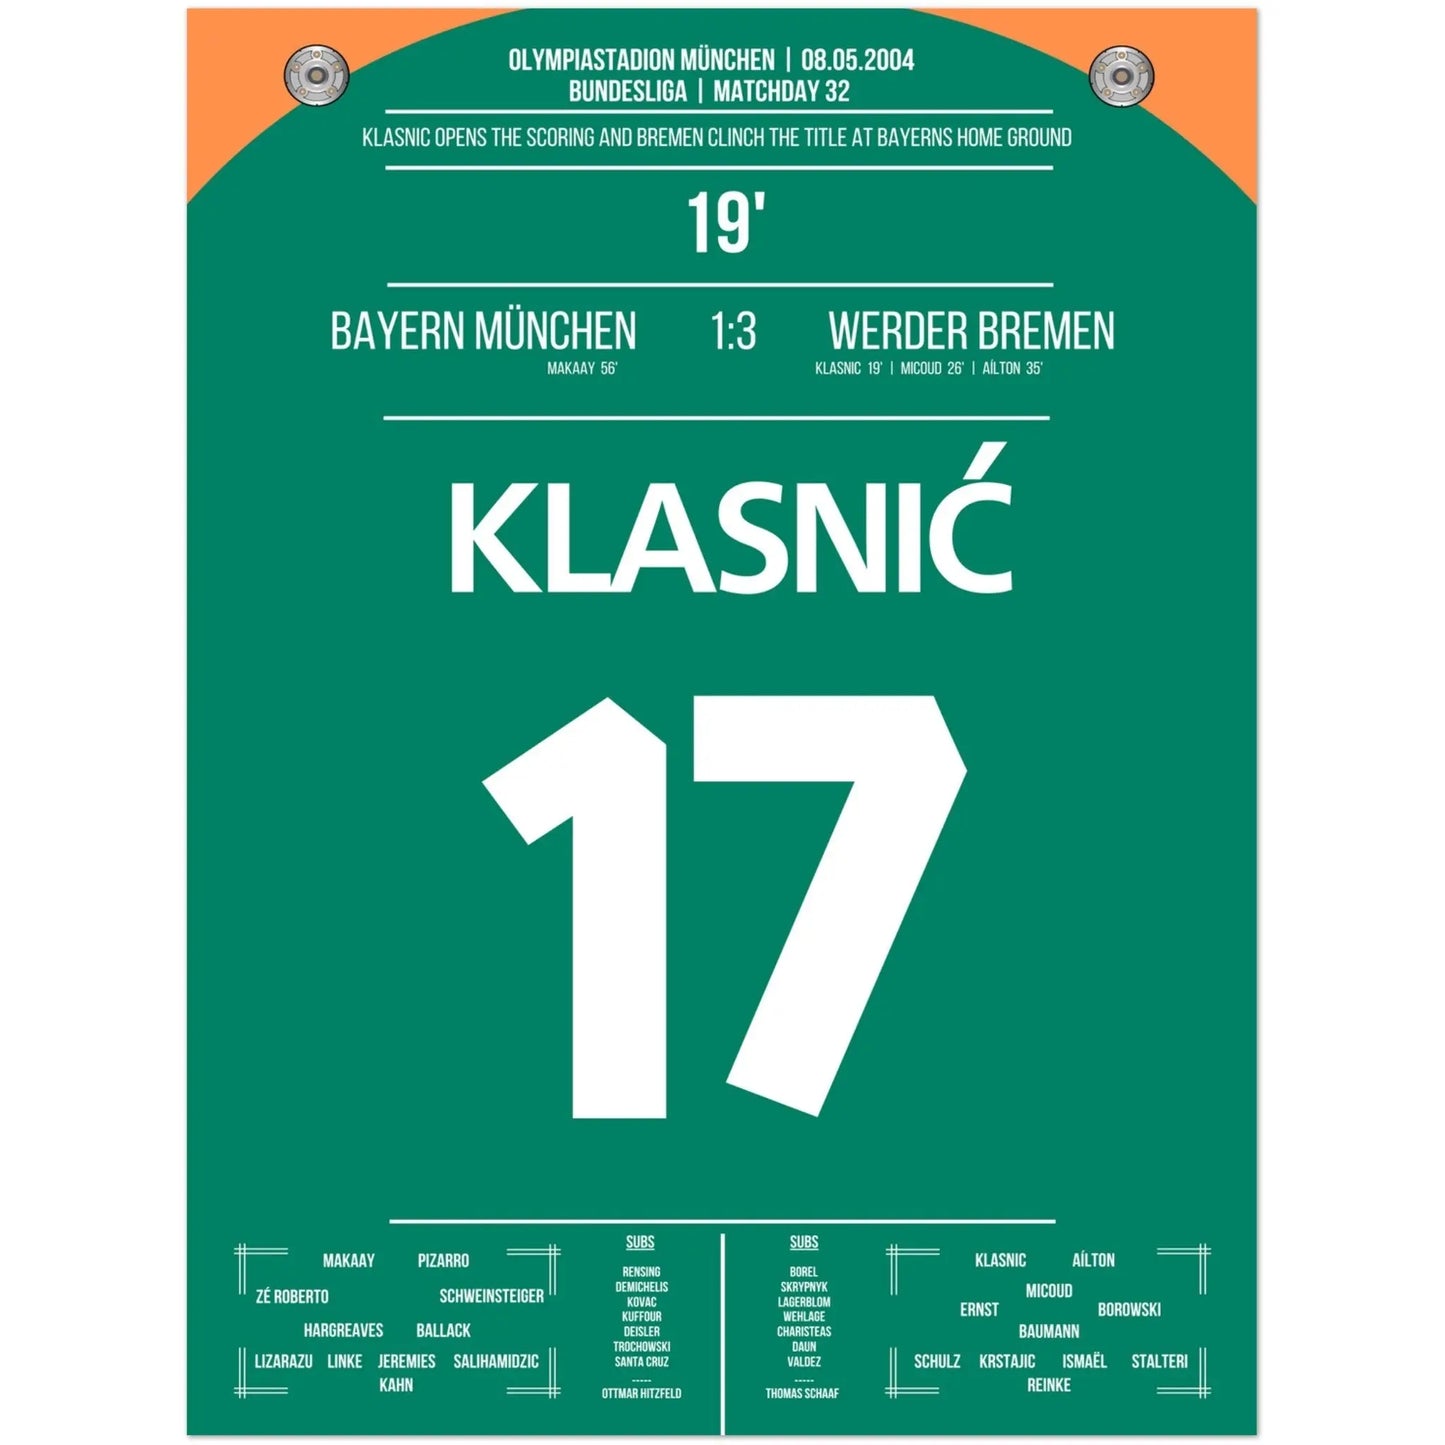 Klasnic's Treffer beim Meisterschaftsgewinn in München 2004 45x60-cm-18x24-Ohne-Rahmen